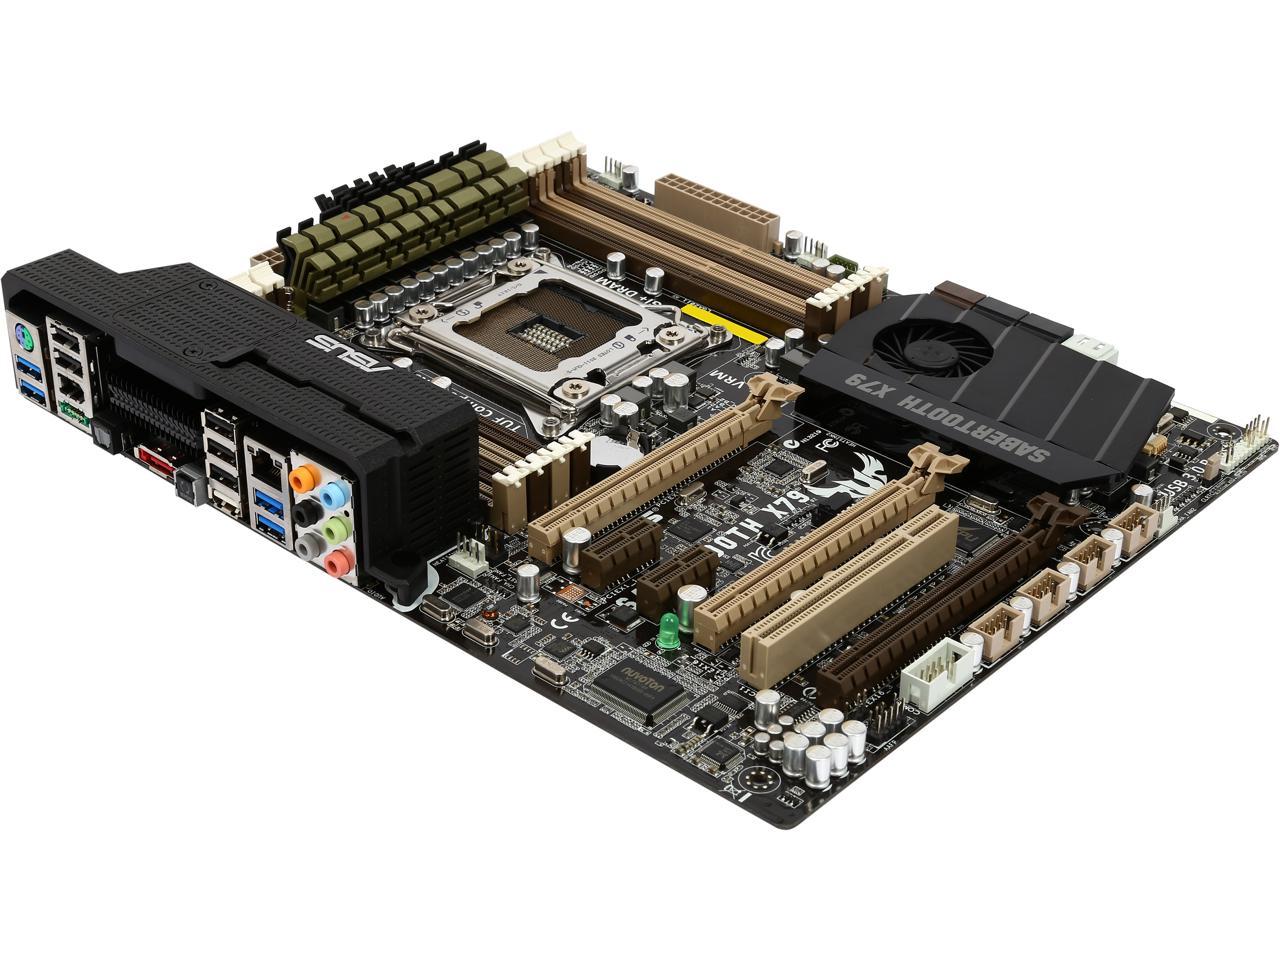 ASUS SABERTOOTH X79-R LGA 2011 Intel X79 SATA 6Gb/s USB 3.0 ATX Intel Motherboard - Certified - Grade A